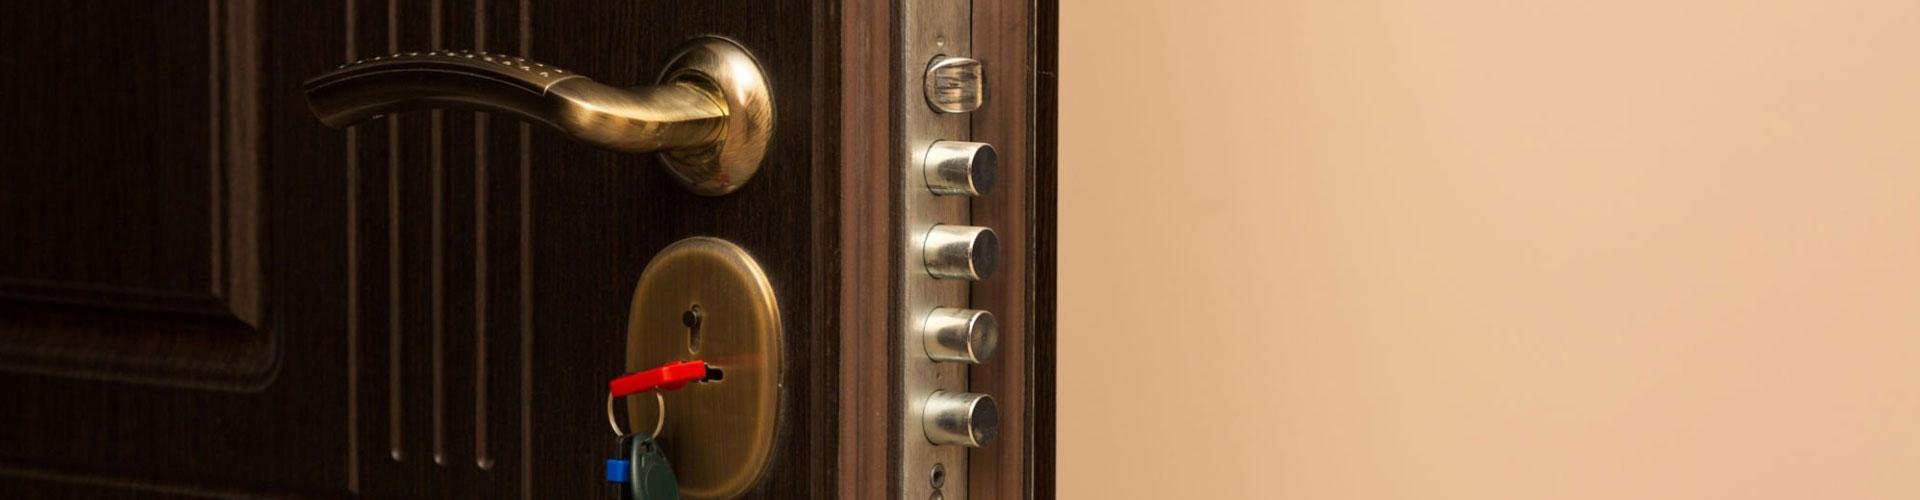 Beneficios de una puerta de seguridad homologada para tu hogar